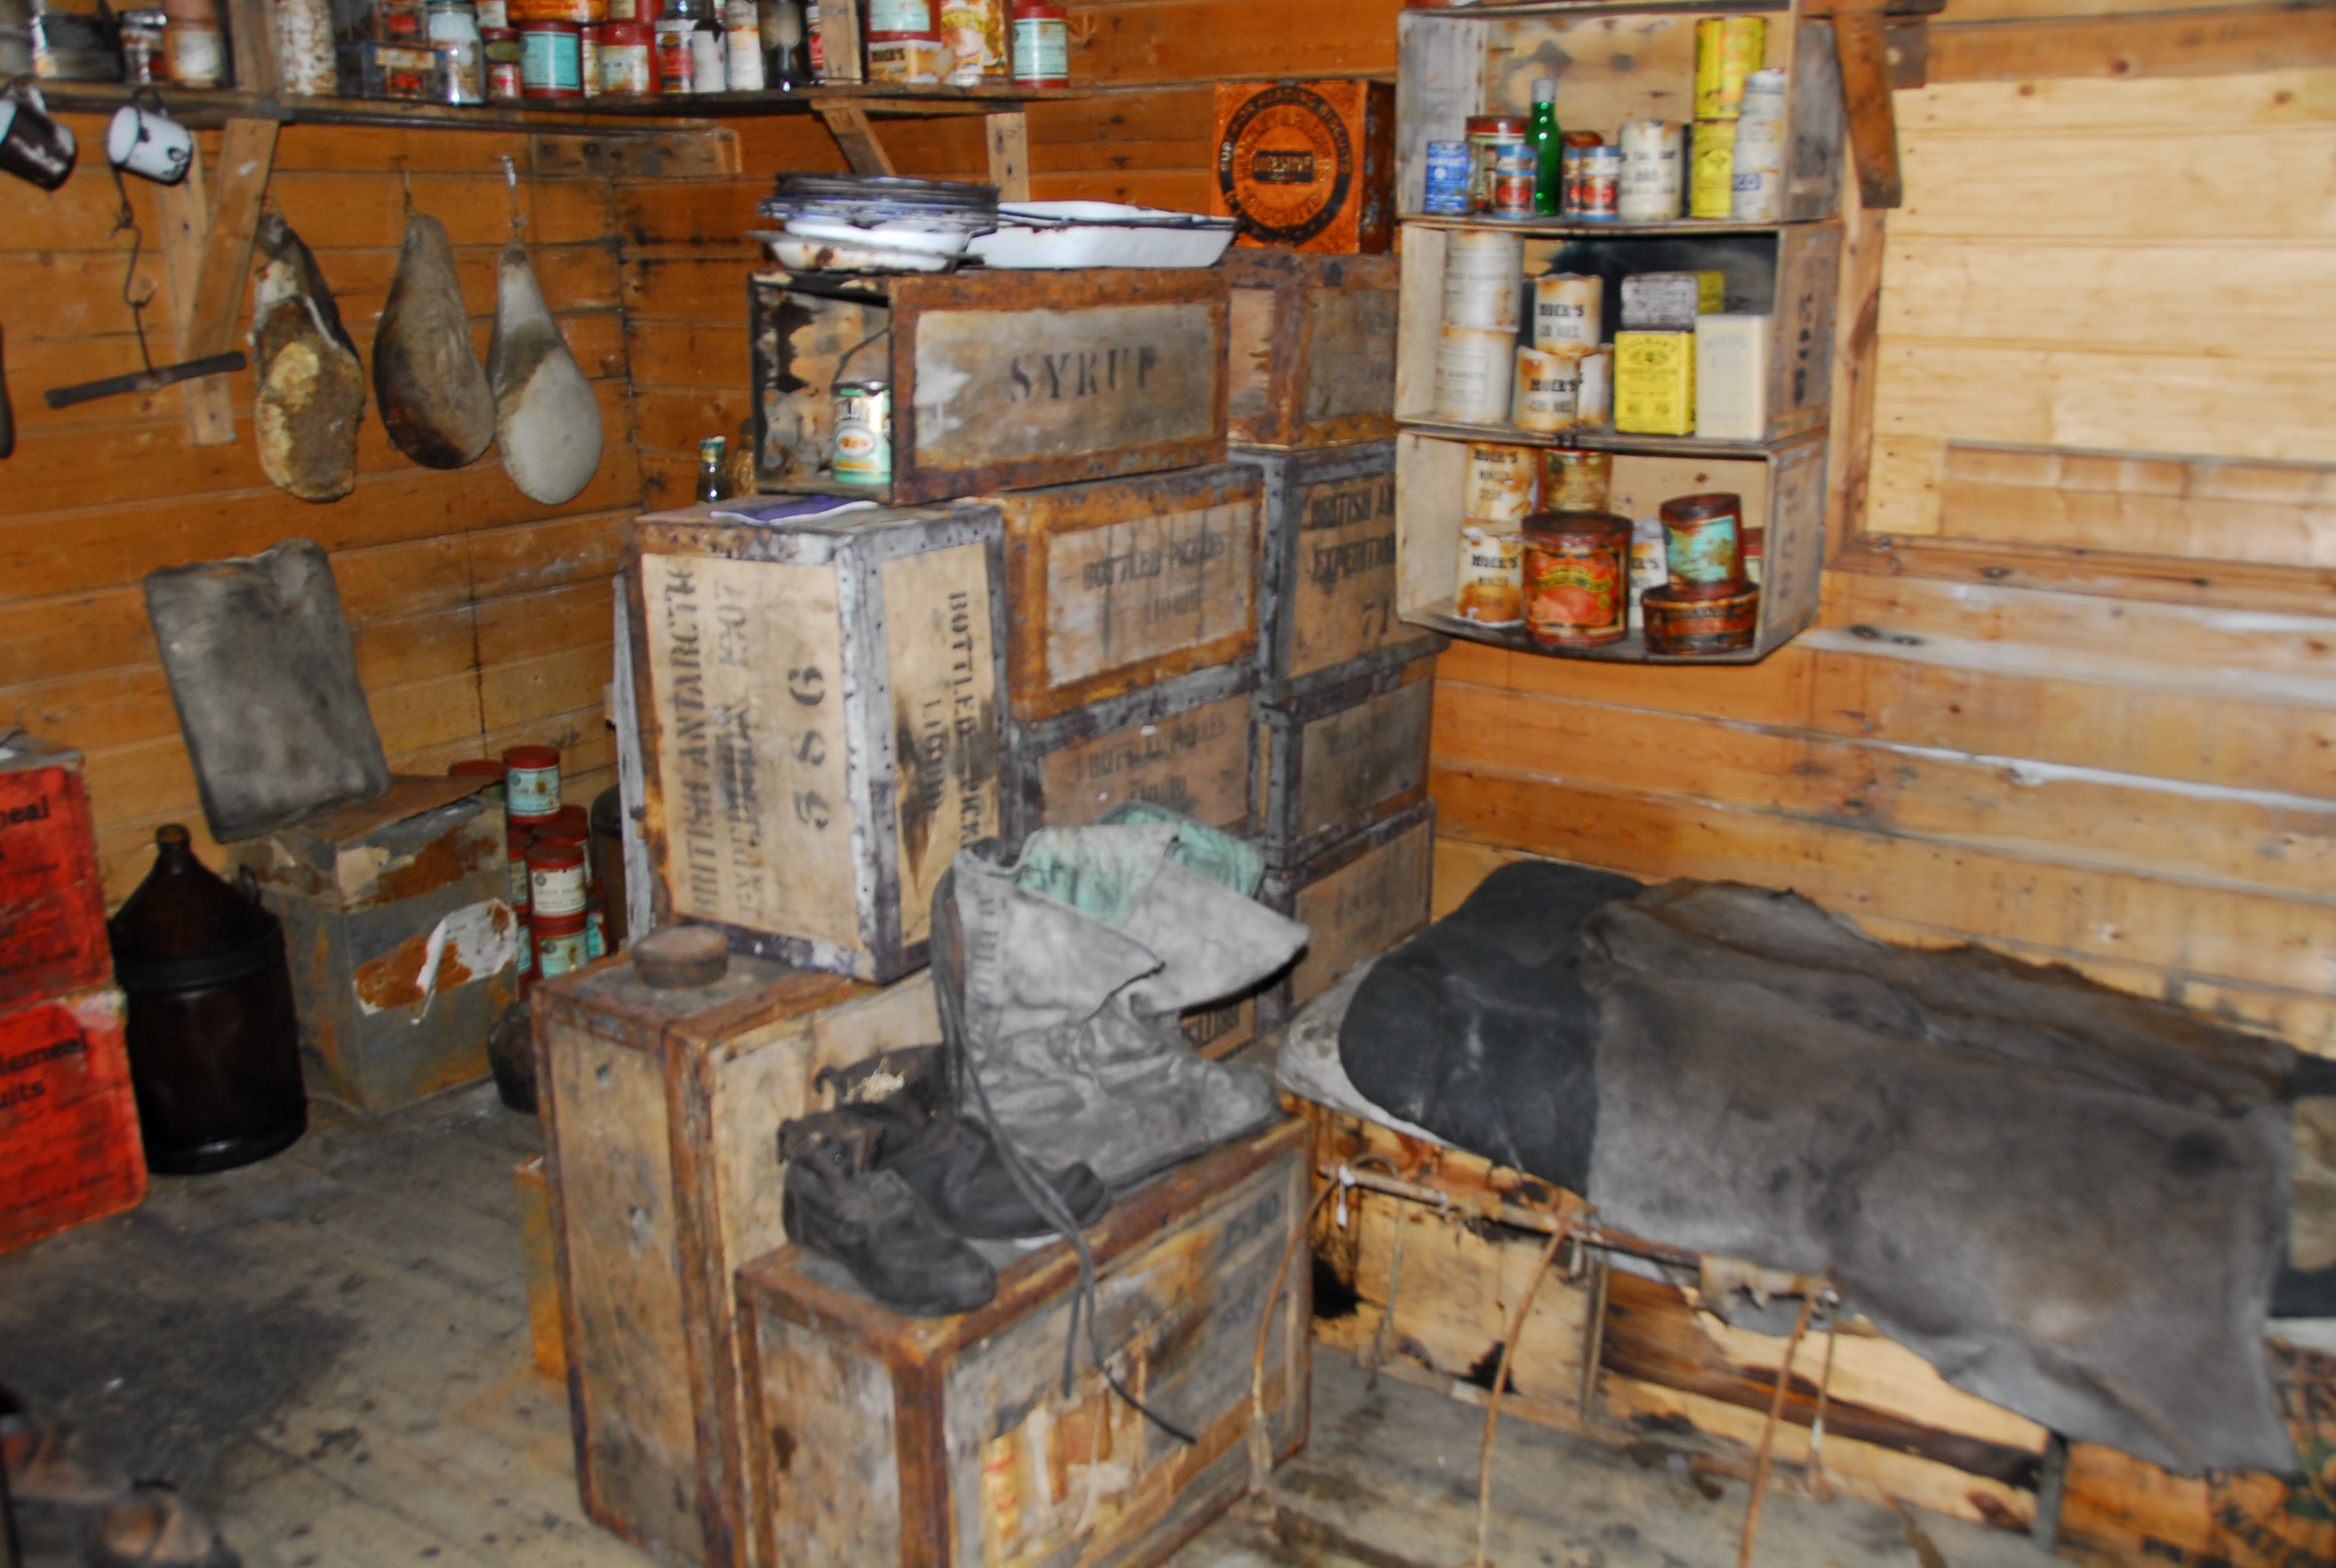 Inside an old hut.